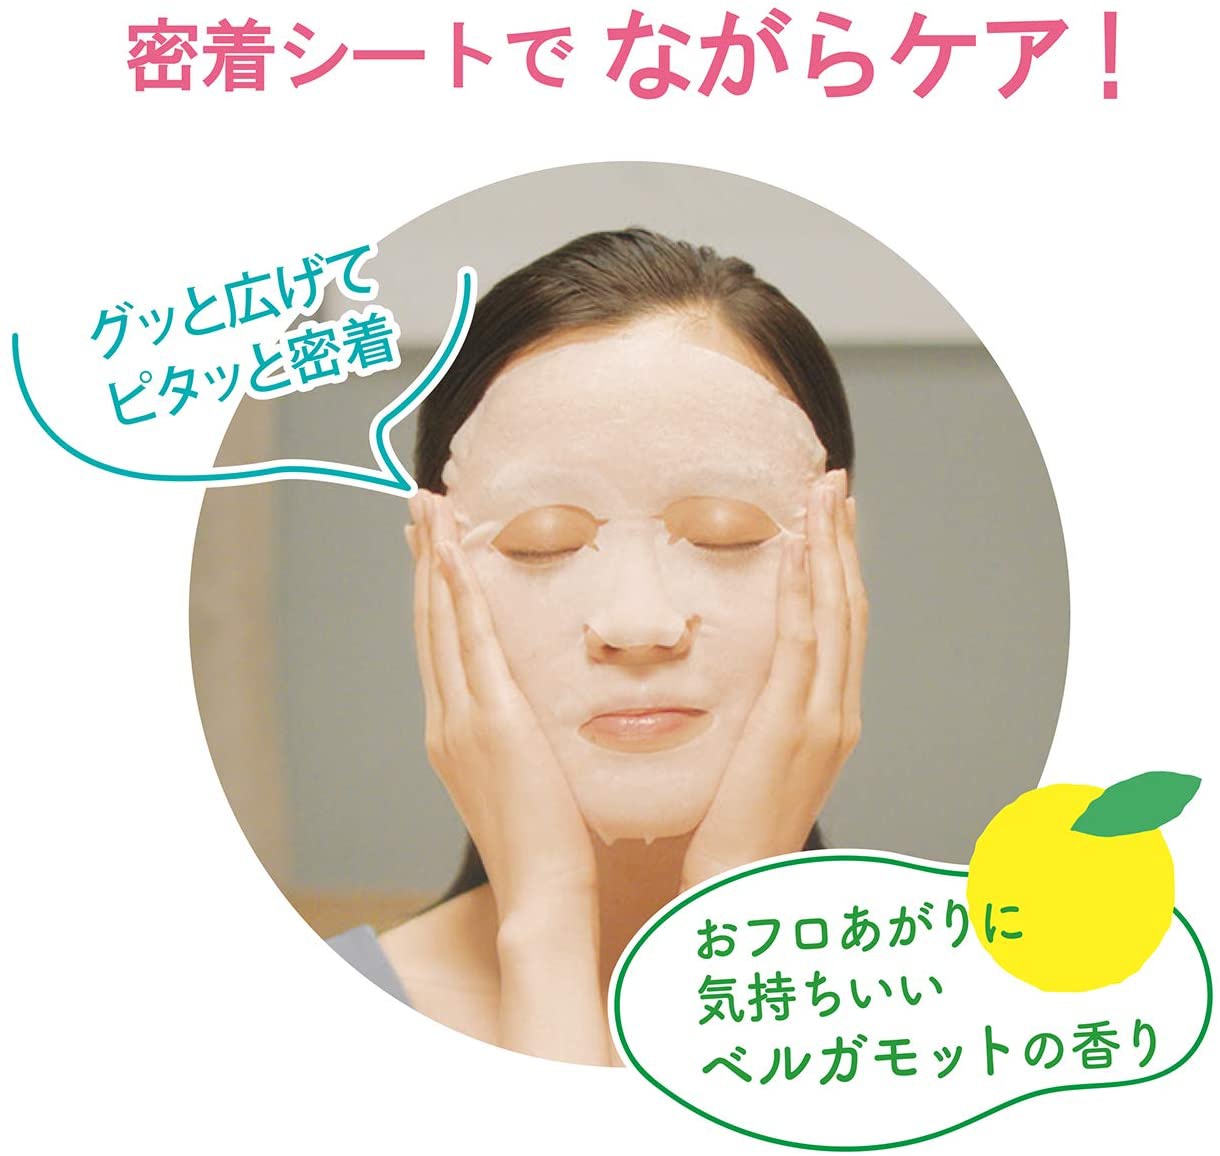 肌美精(HADABISEI) うるーぷ おフロあがりマスクの商品画像7 